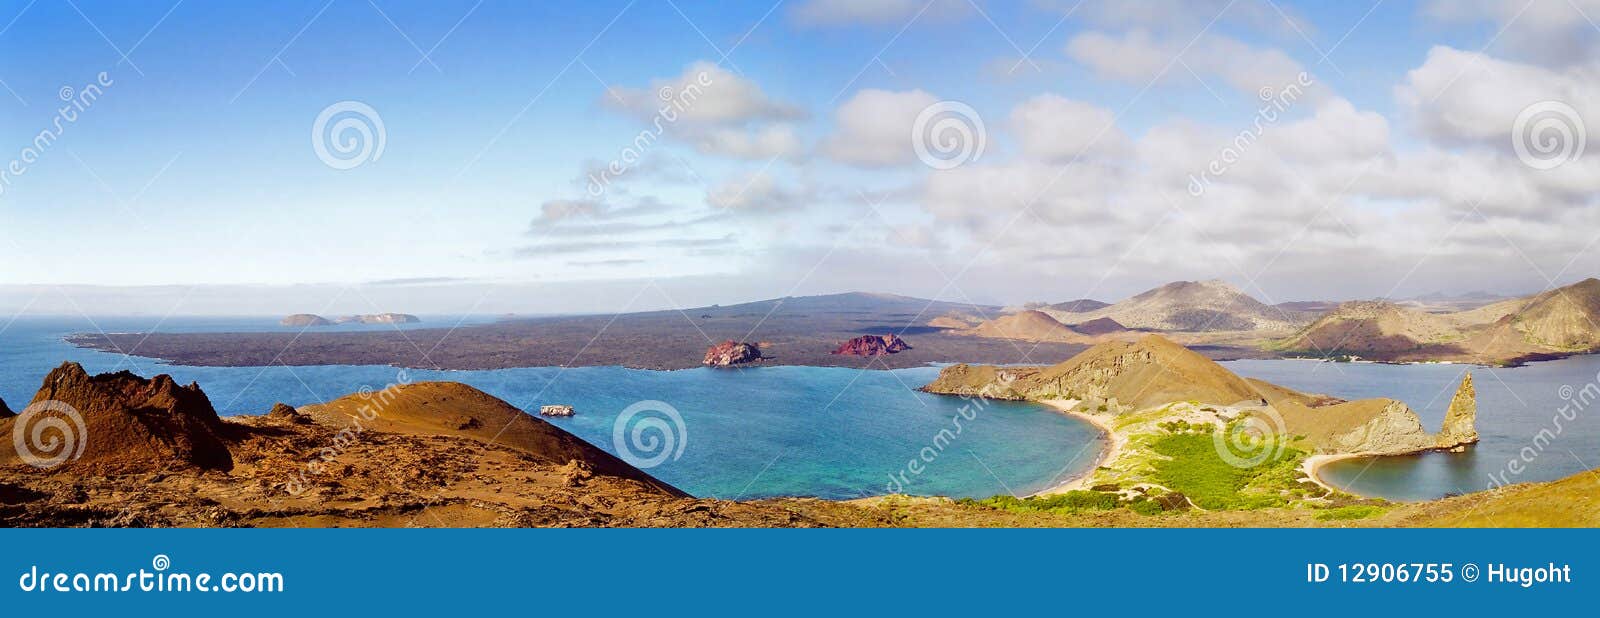 galapagos islands panorama